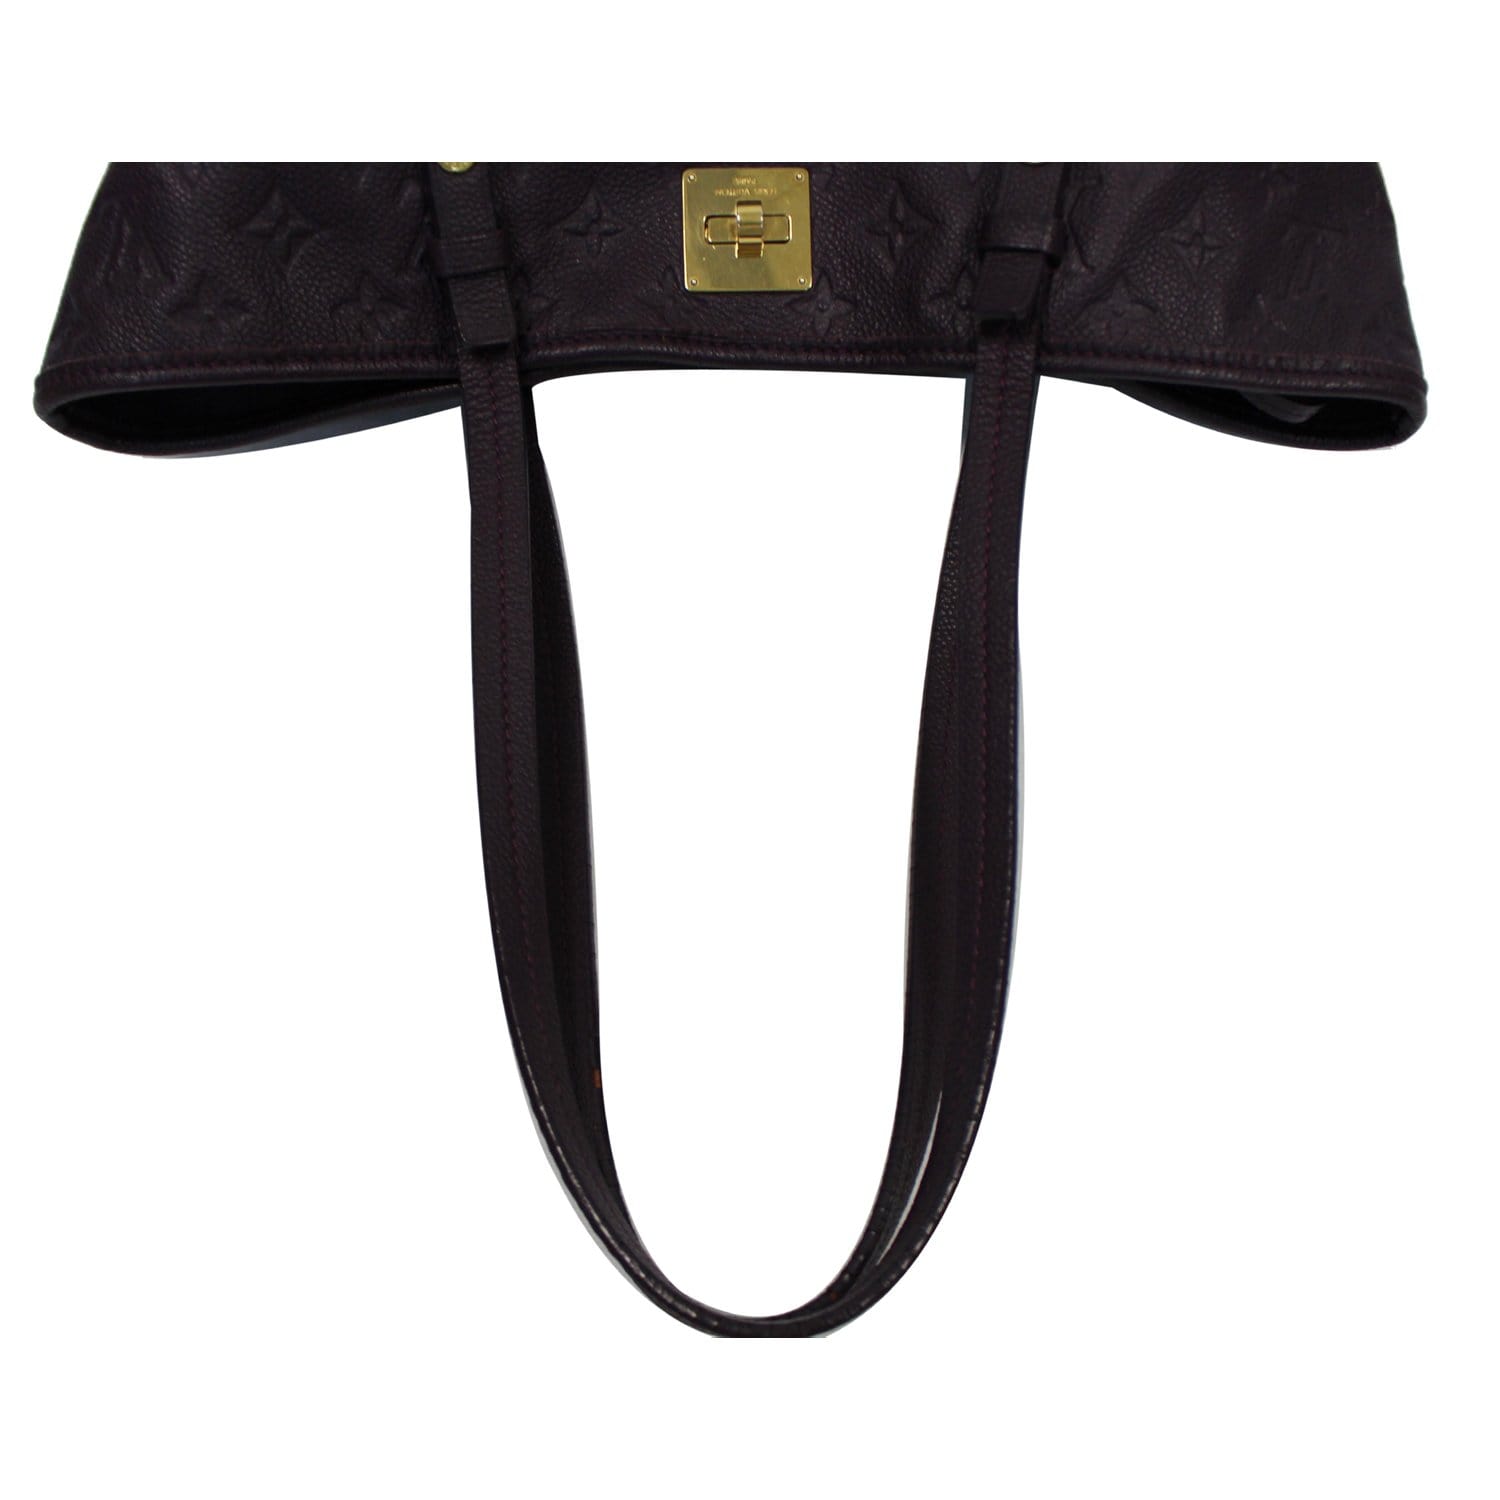 Louis Vuitton Citadine PM Purple Empreinte Leather Shoulder Bag TS3141 –  Exchange Collectibles